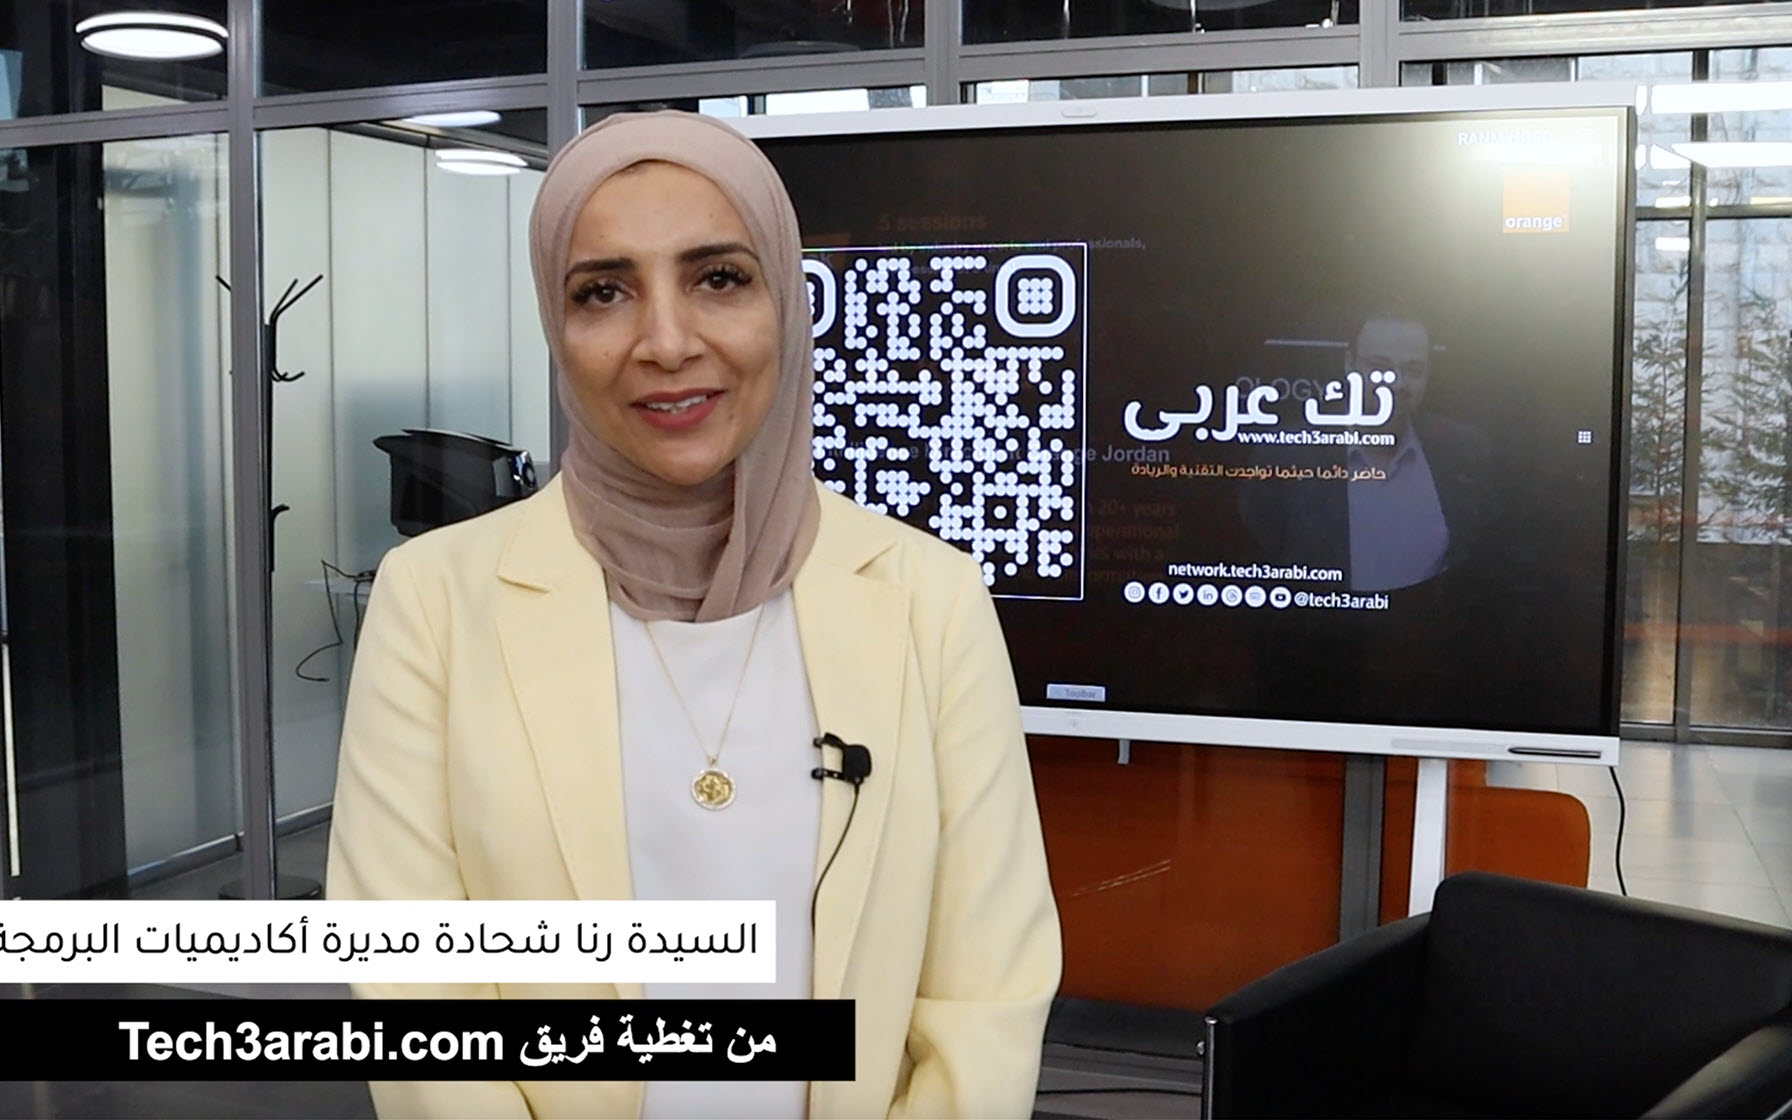 مقابلة فريق تك عربي مع السيدة رنا شحادة على هامش الأسبوع التقني الذي أقيم في قرية أورنج الرقمية